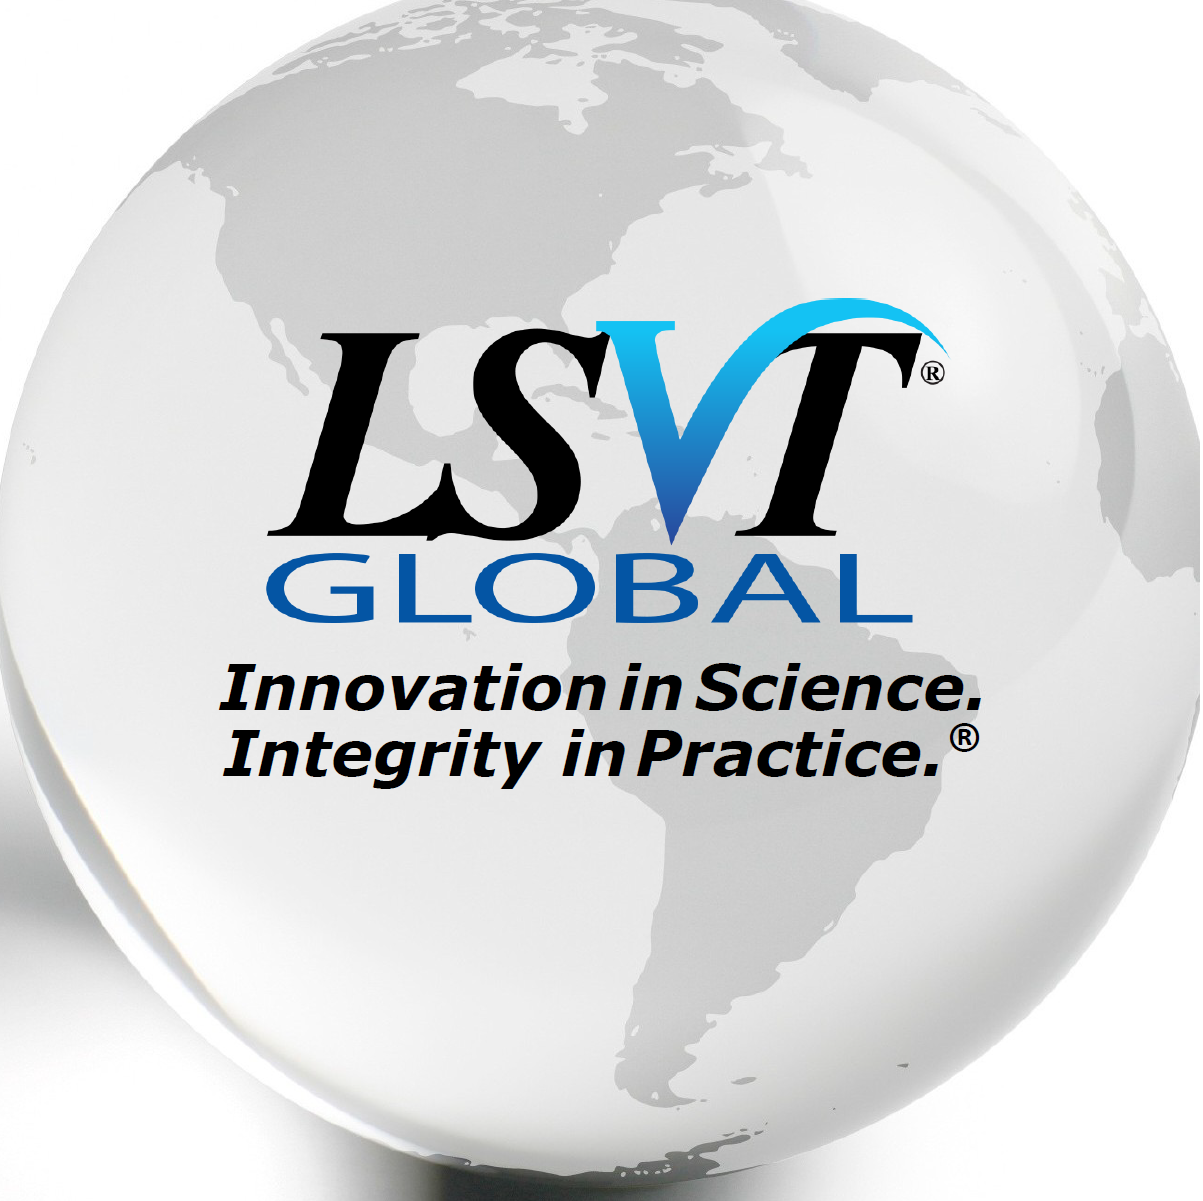 https://blog.lsvtglobal.com/wp-content/uploads/2020/11/Peru-LSVT-Global.png